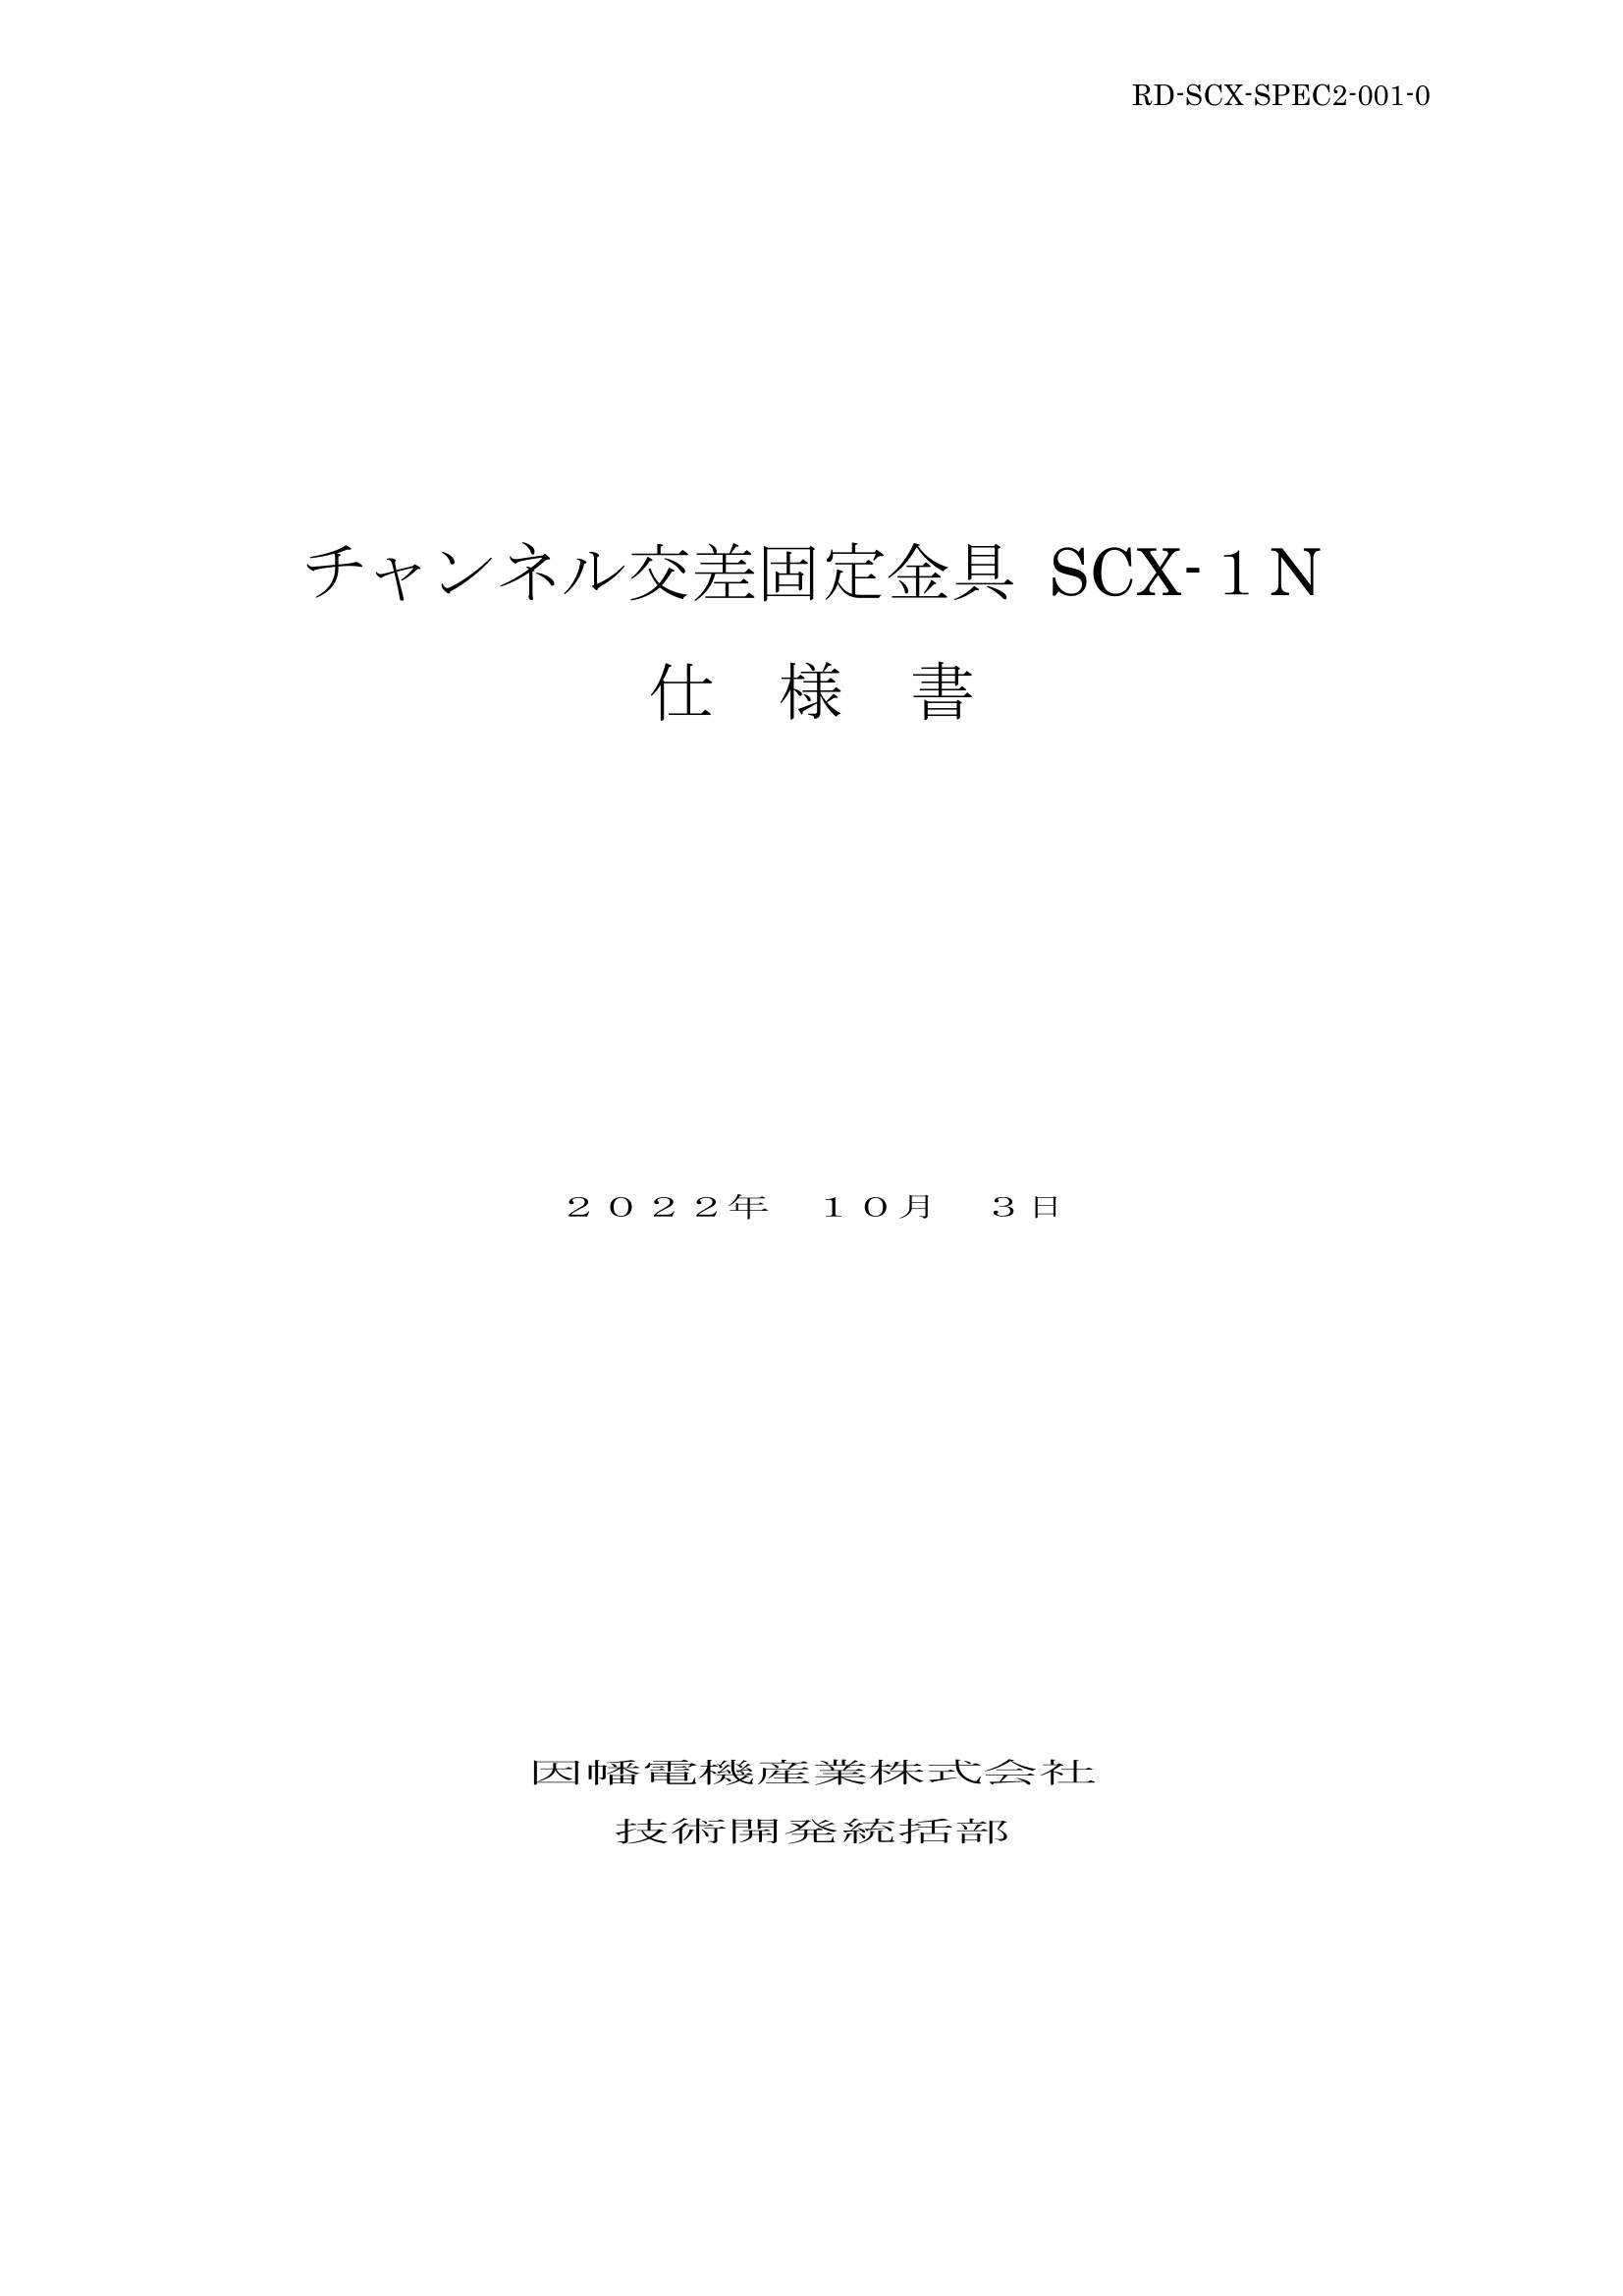 SCX-1N_仕様書_20221003.pdf